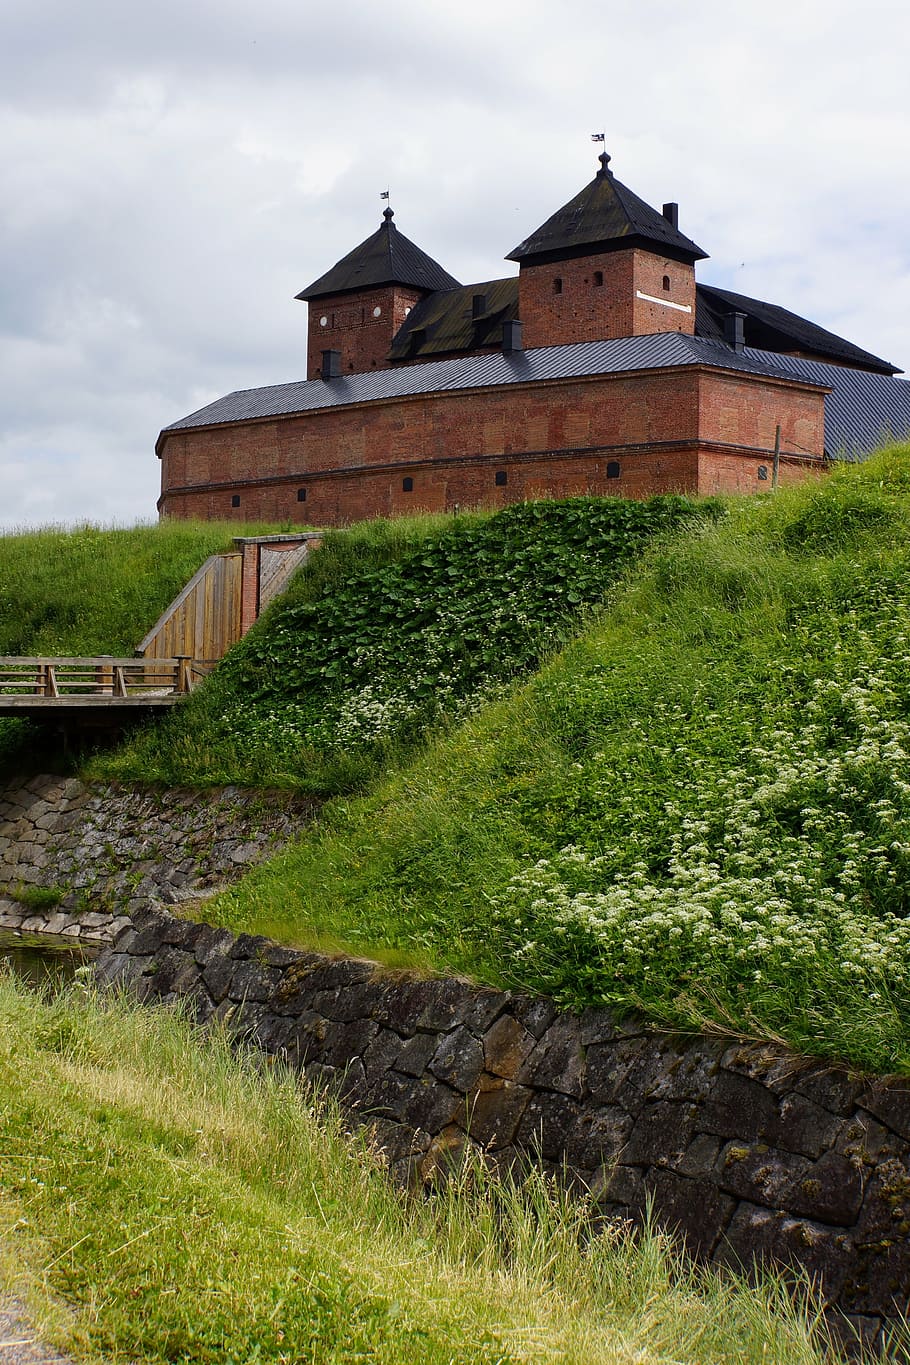 finnish, castle, häme castle, architecture, brick, history, attraction, medieval, building, tourist spot